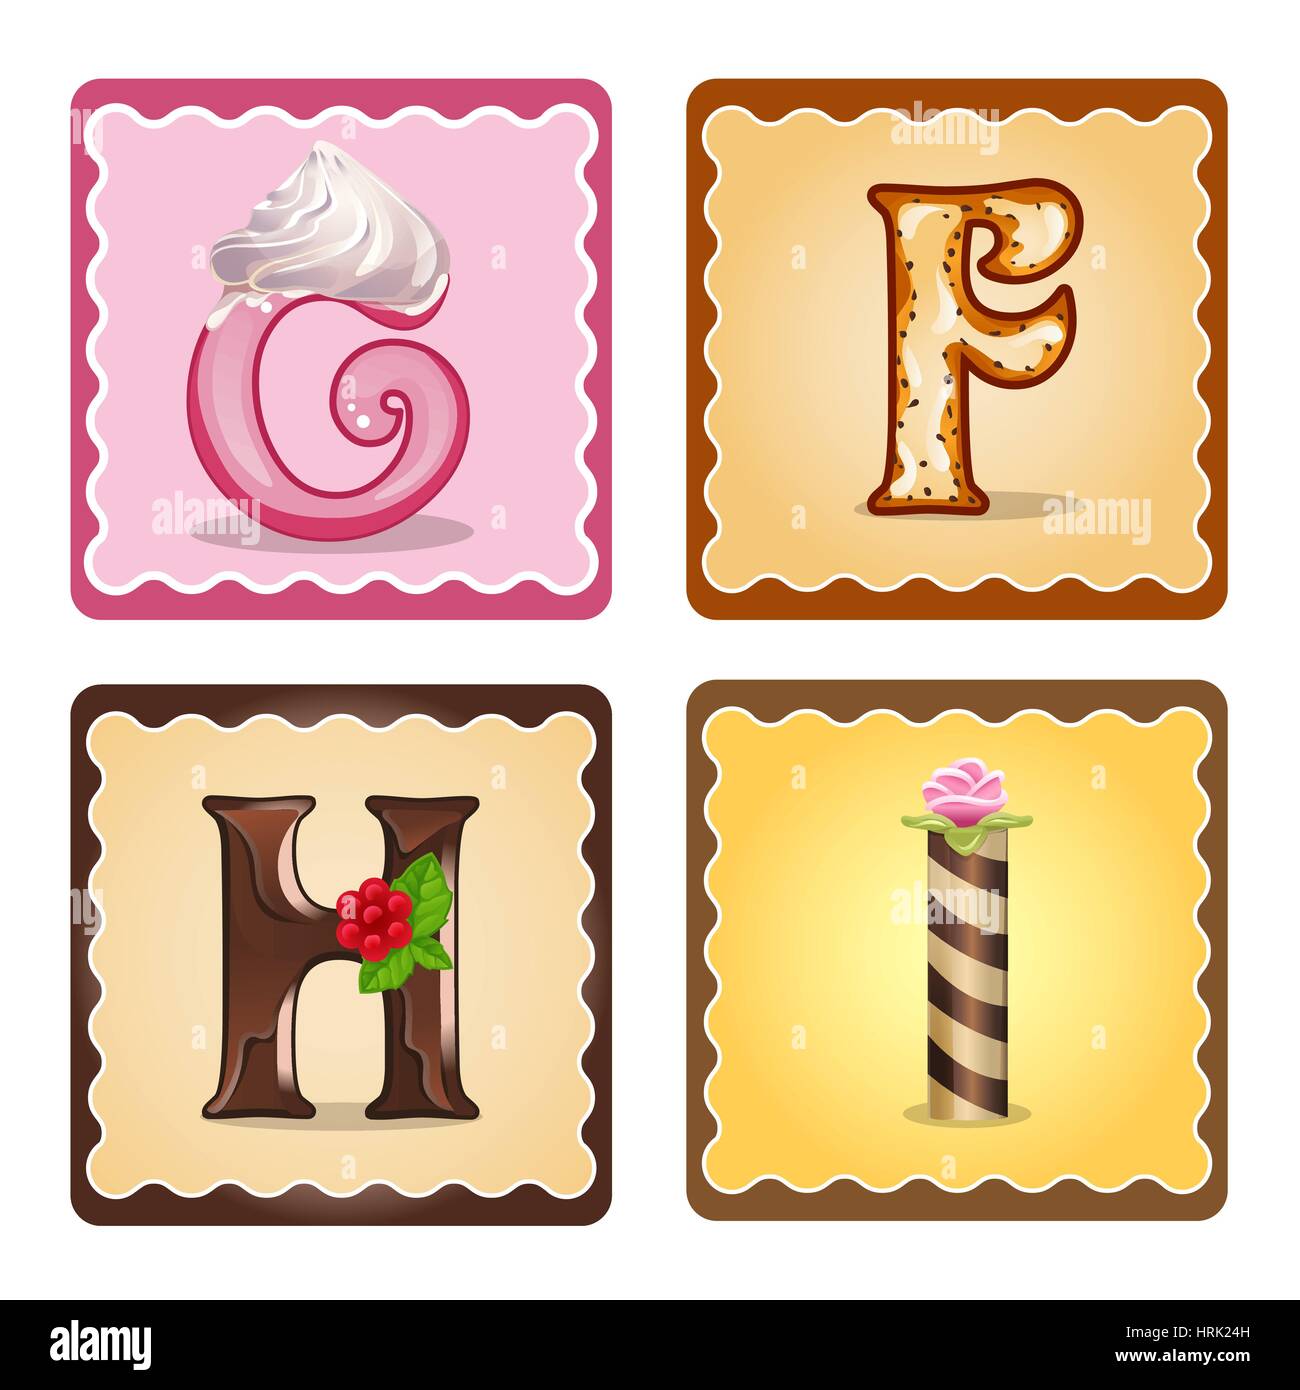 Schede Per I Bambini Per Imparare L Alfabeto Lettere G F H I Come Il Cioccolato In Forma Di Caramelle E Dolci Illustrazione Vettoriale Immagine E Vettoriale Alamy